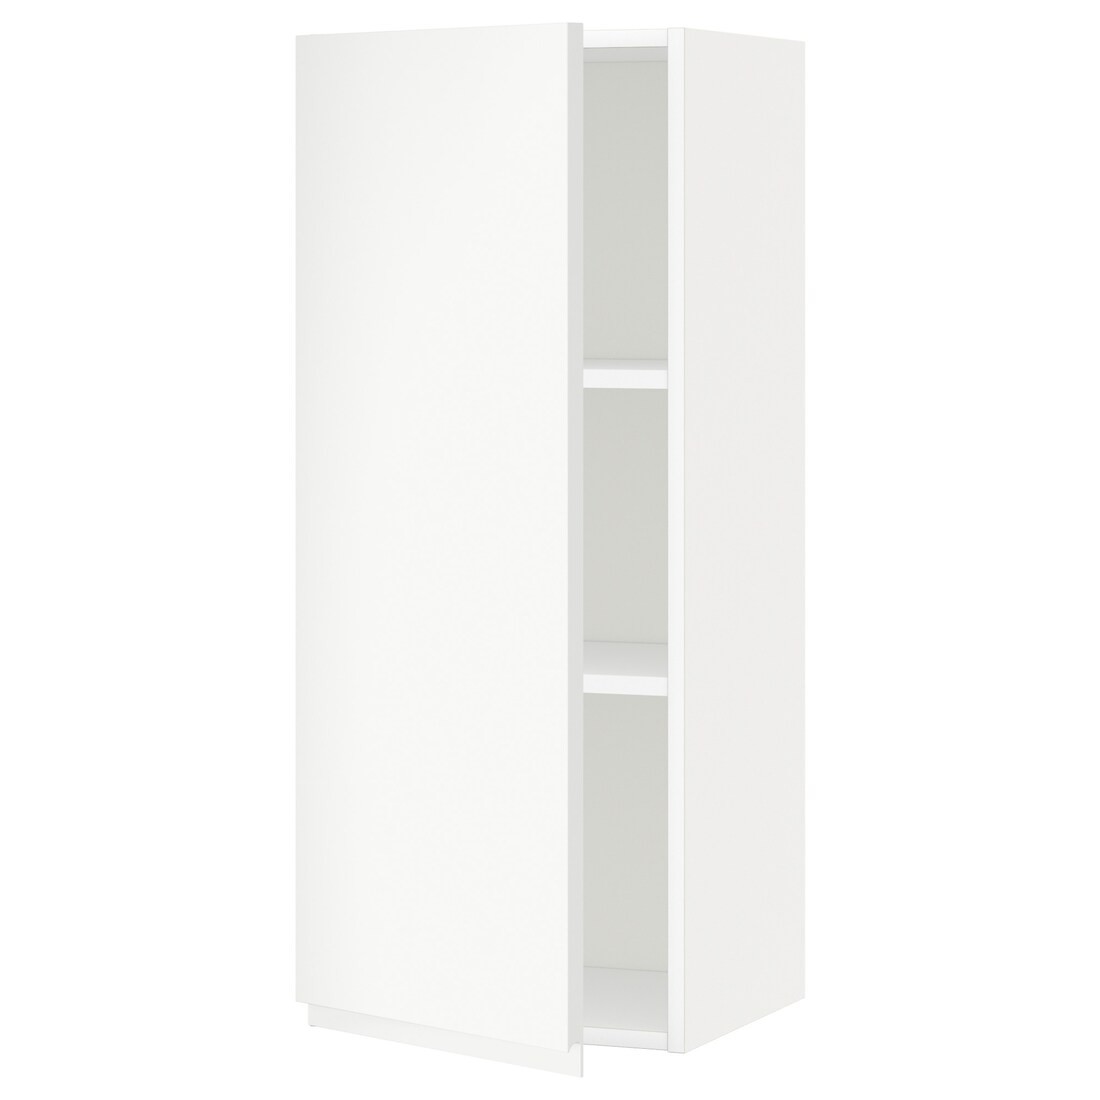 IKEA METOD МЕТОД Шкаф навесной с полками, белый / Voxtorp матовый белый, 40x100 см 79464445 794.644.45